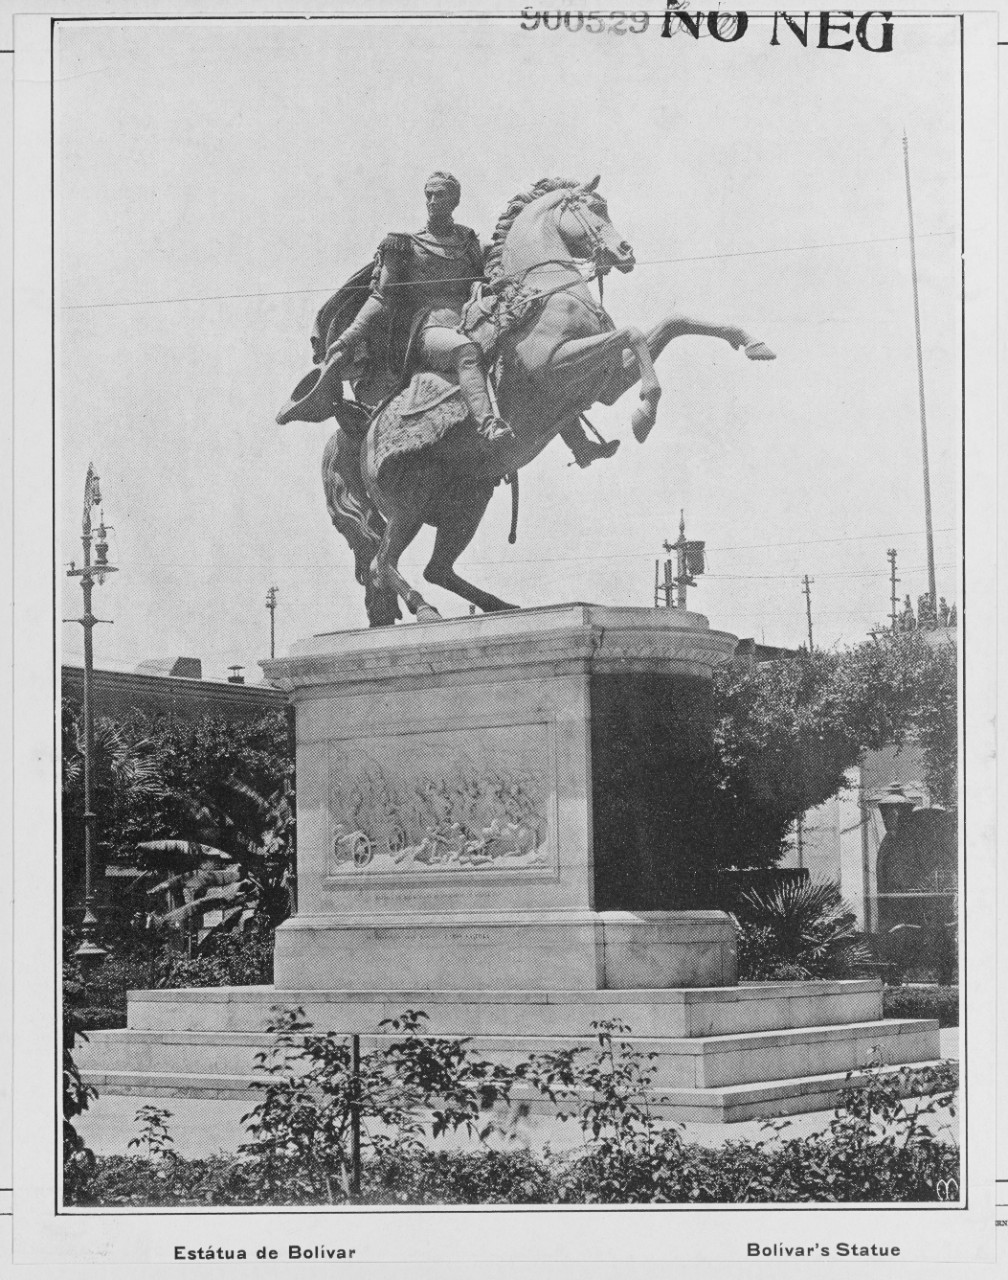 Bolivar's Statue